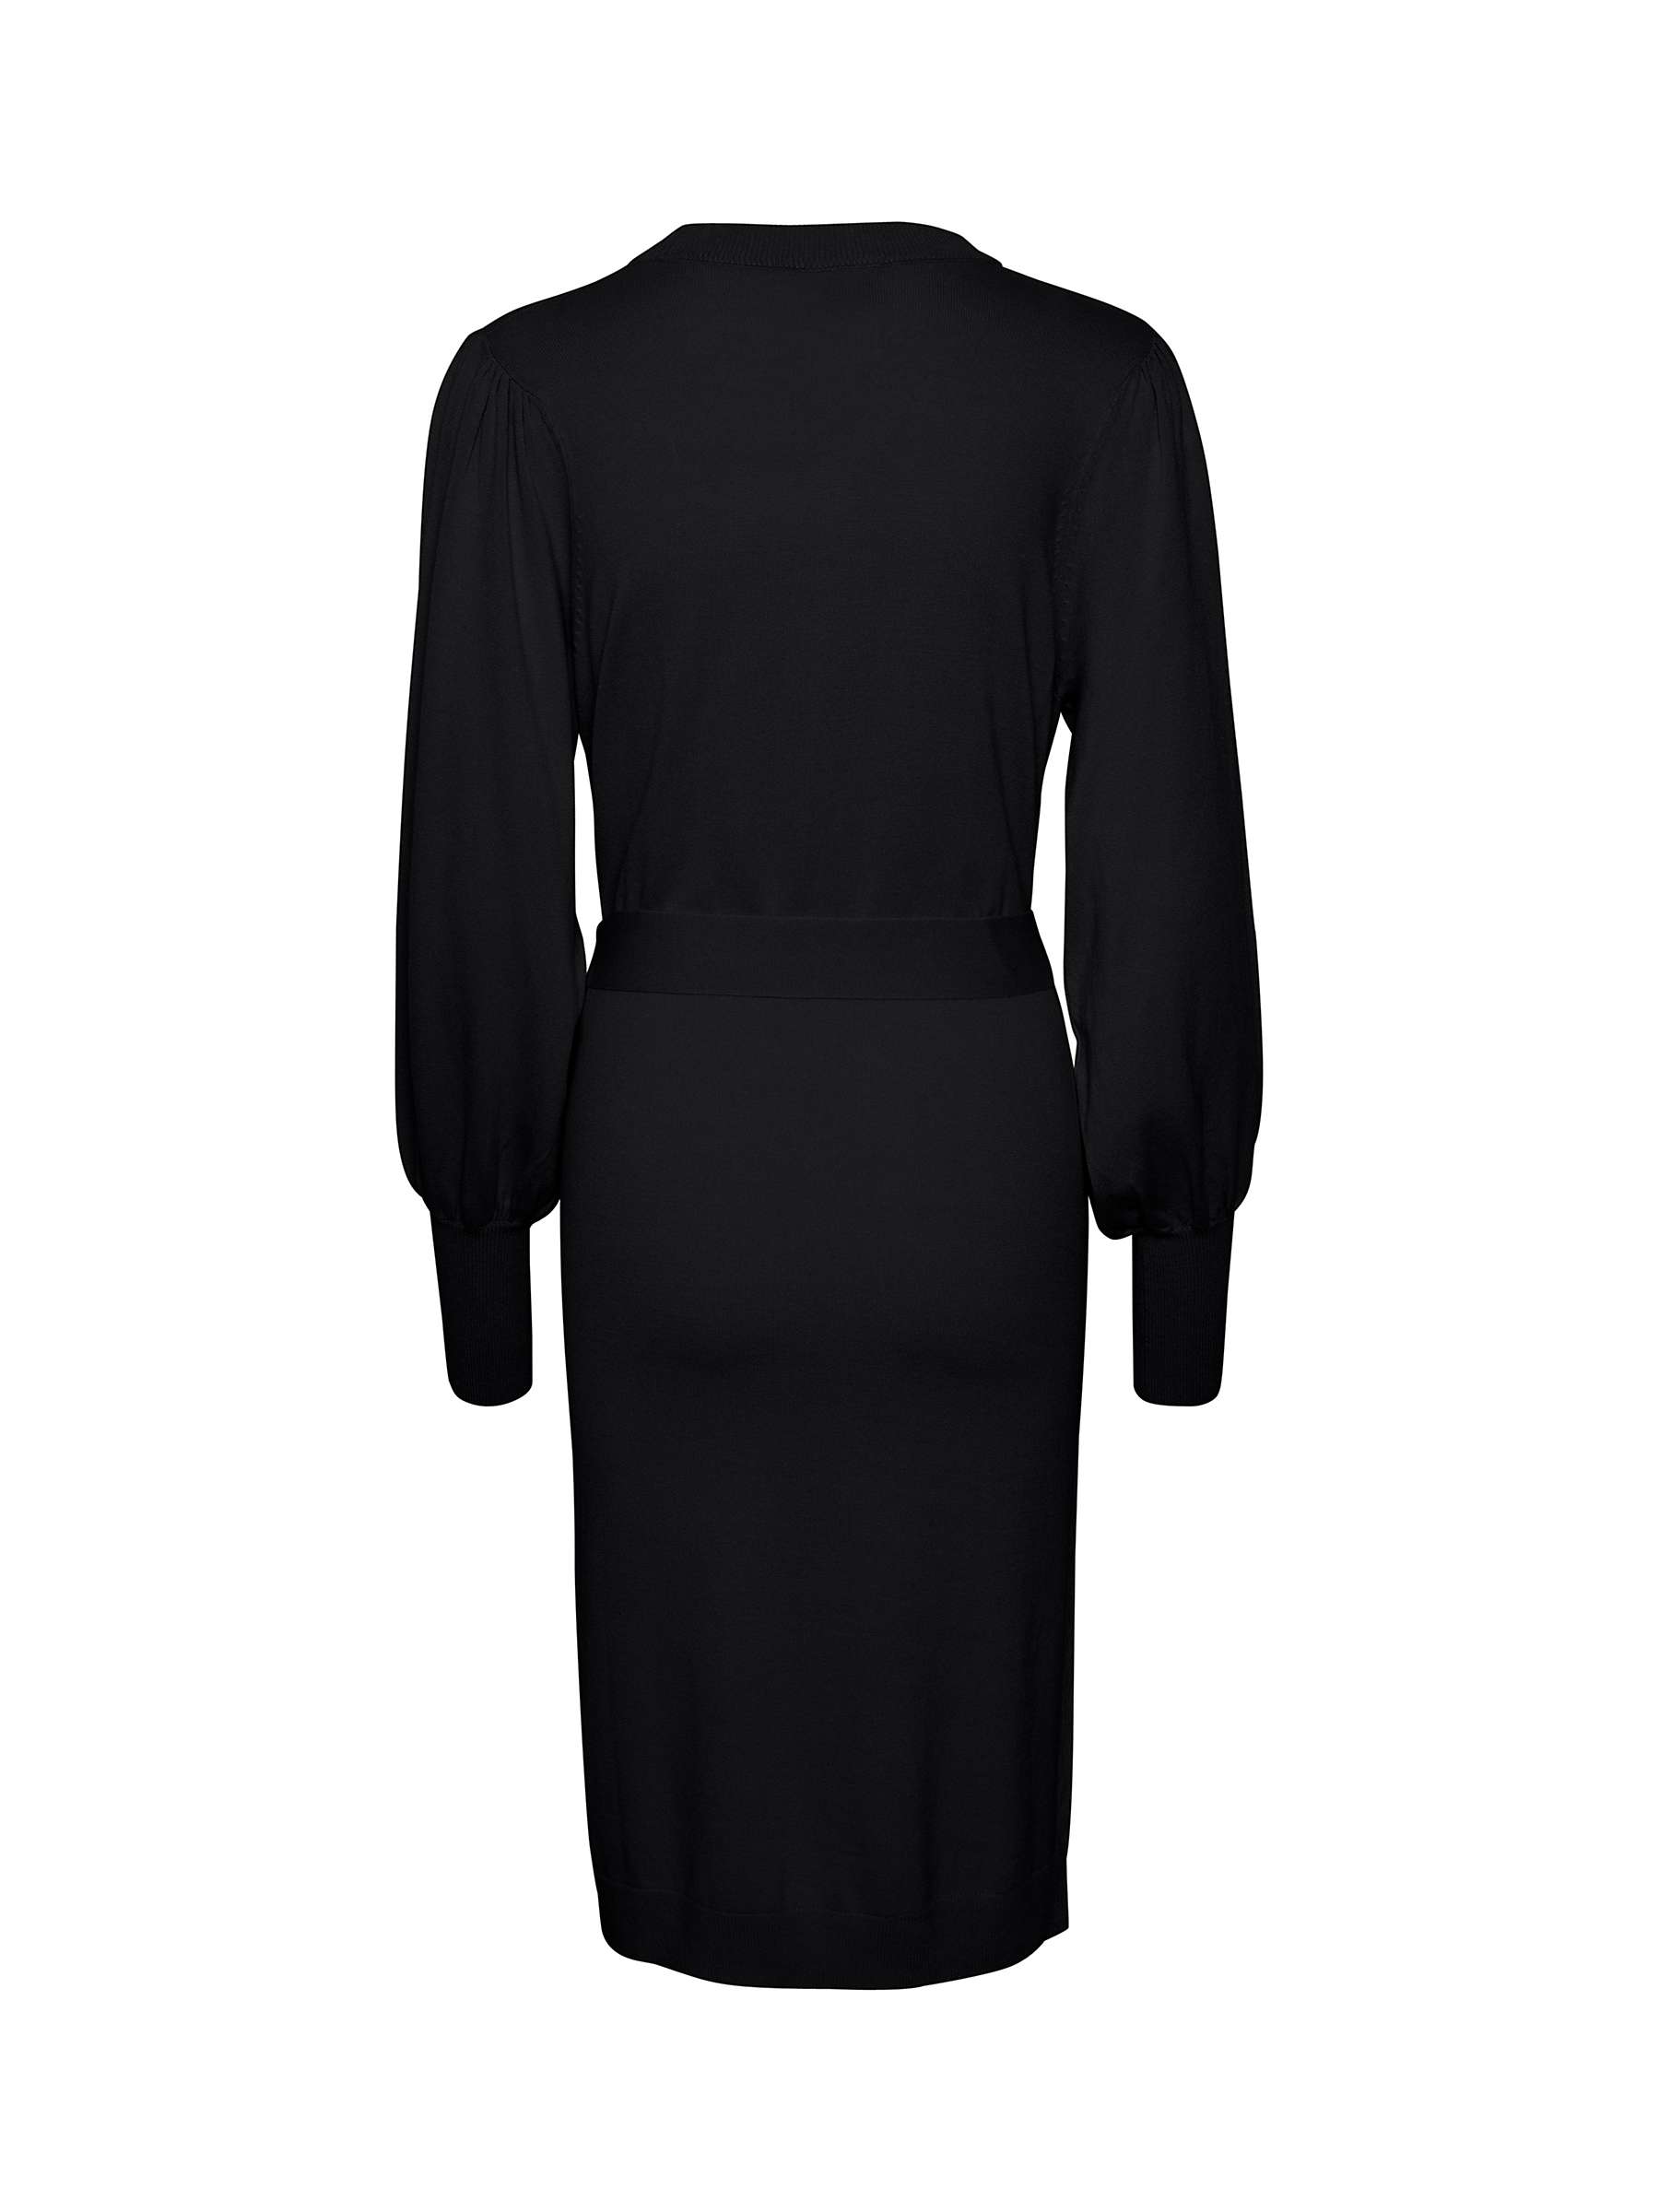 KAFFE Jess Knit Jumper Dress, Deep Black at John Lewis & Partners